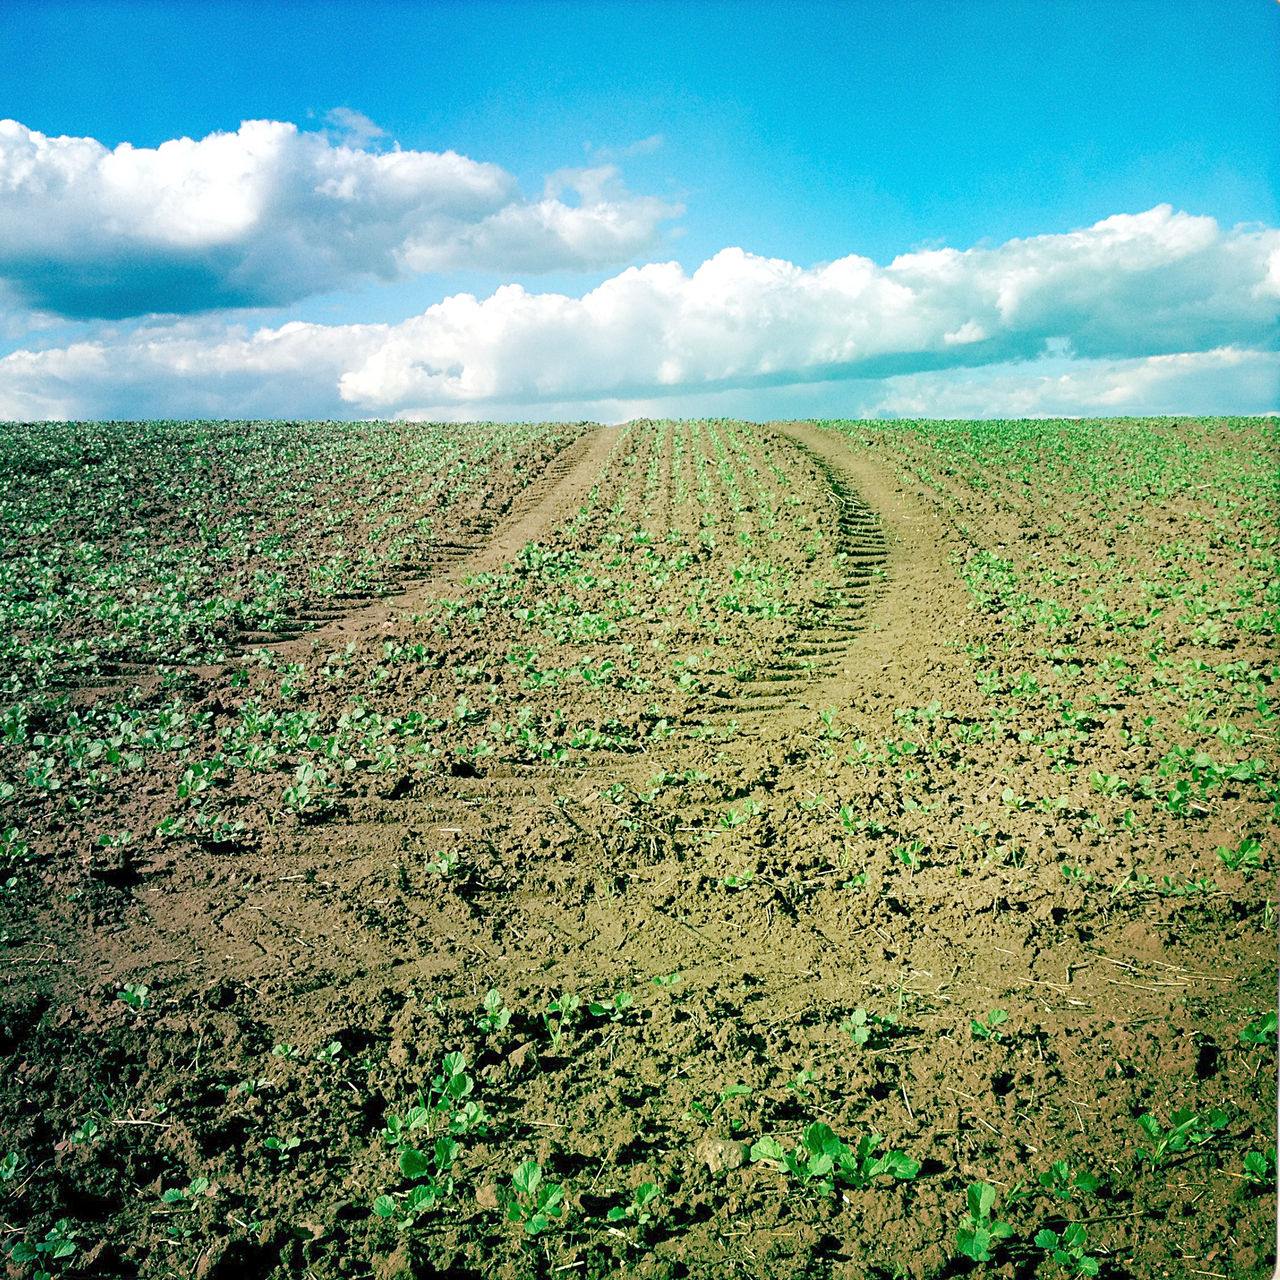 Eine junges Rübenfeld mit aufkeimenden Pflanzen vor starkblauem, schönwetterbewölktem Himmel wird von einer Traktorspur durchbrochen.